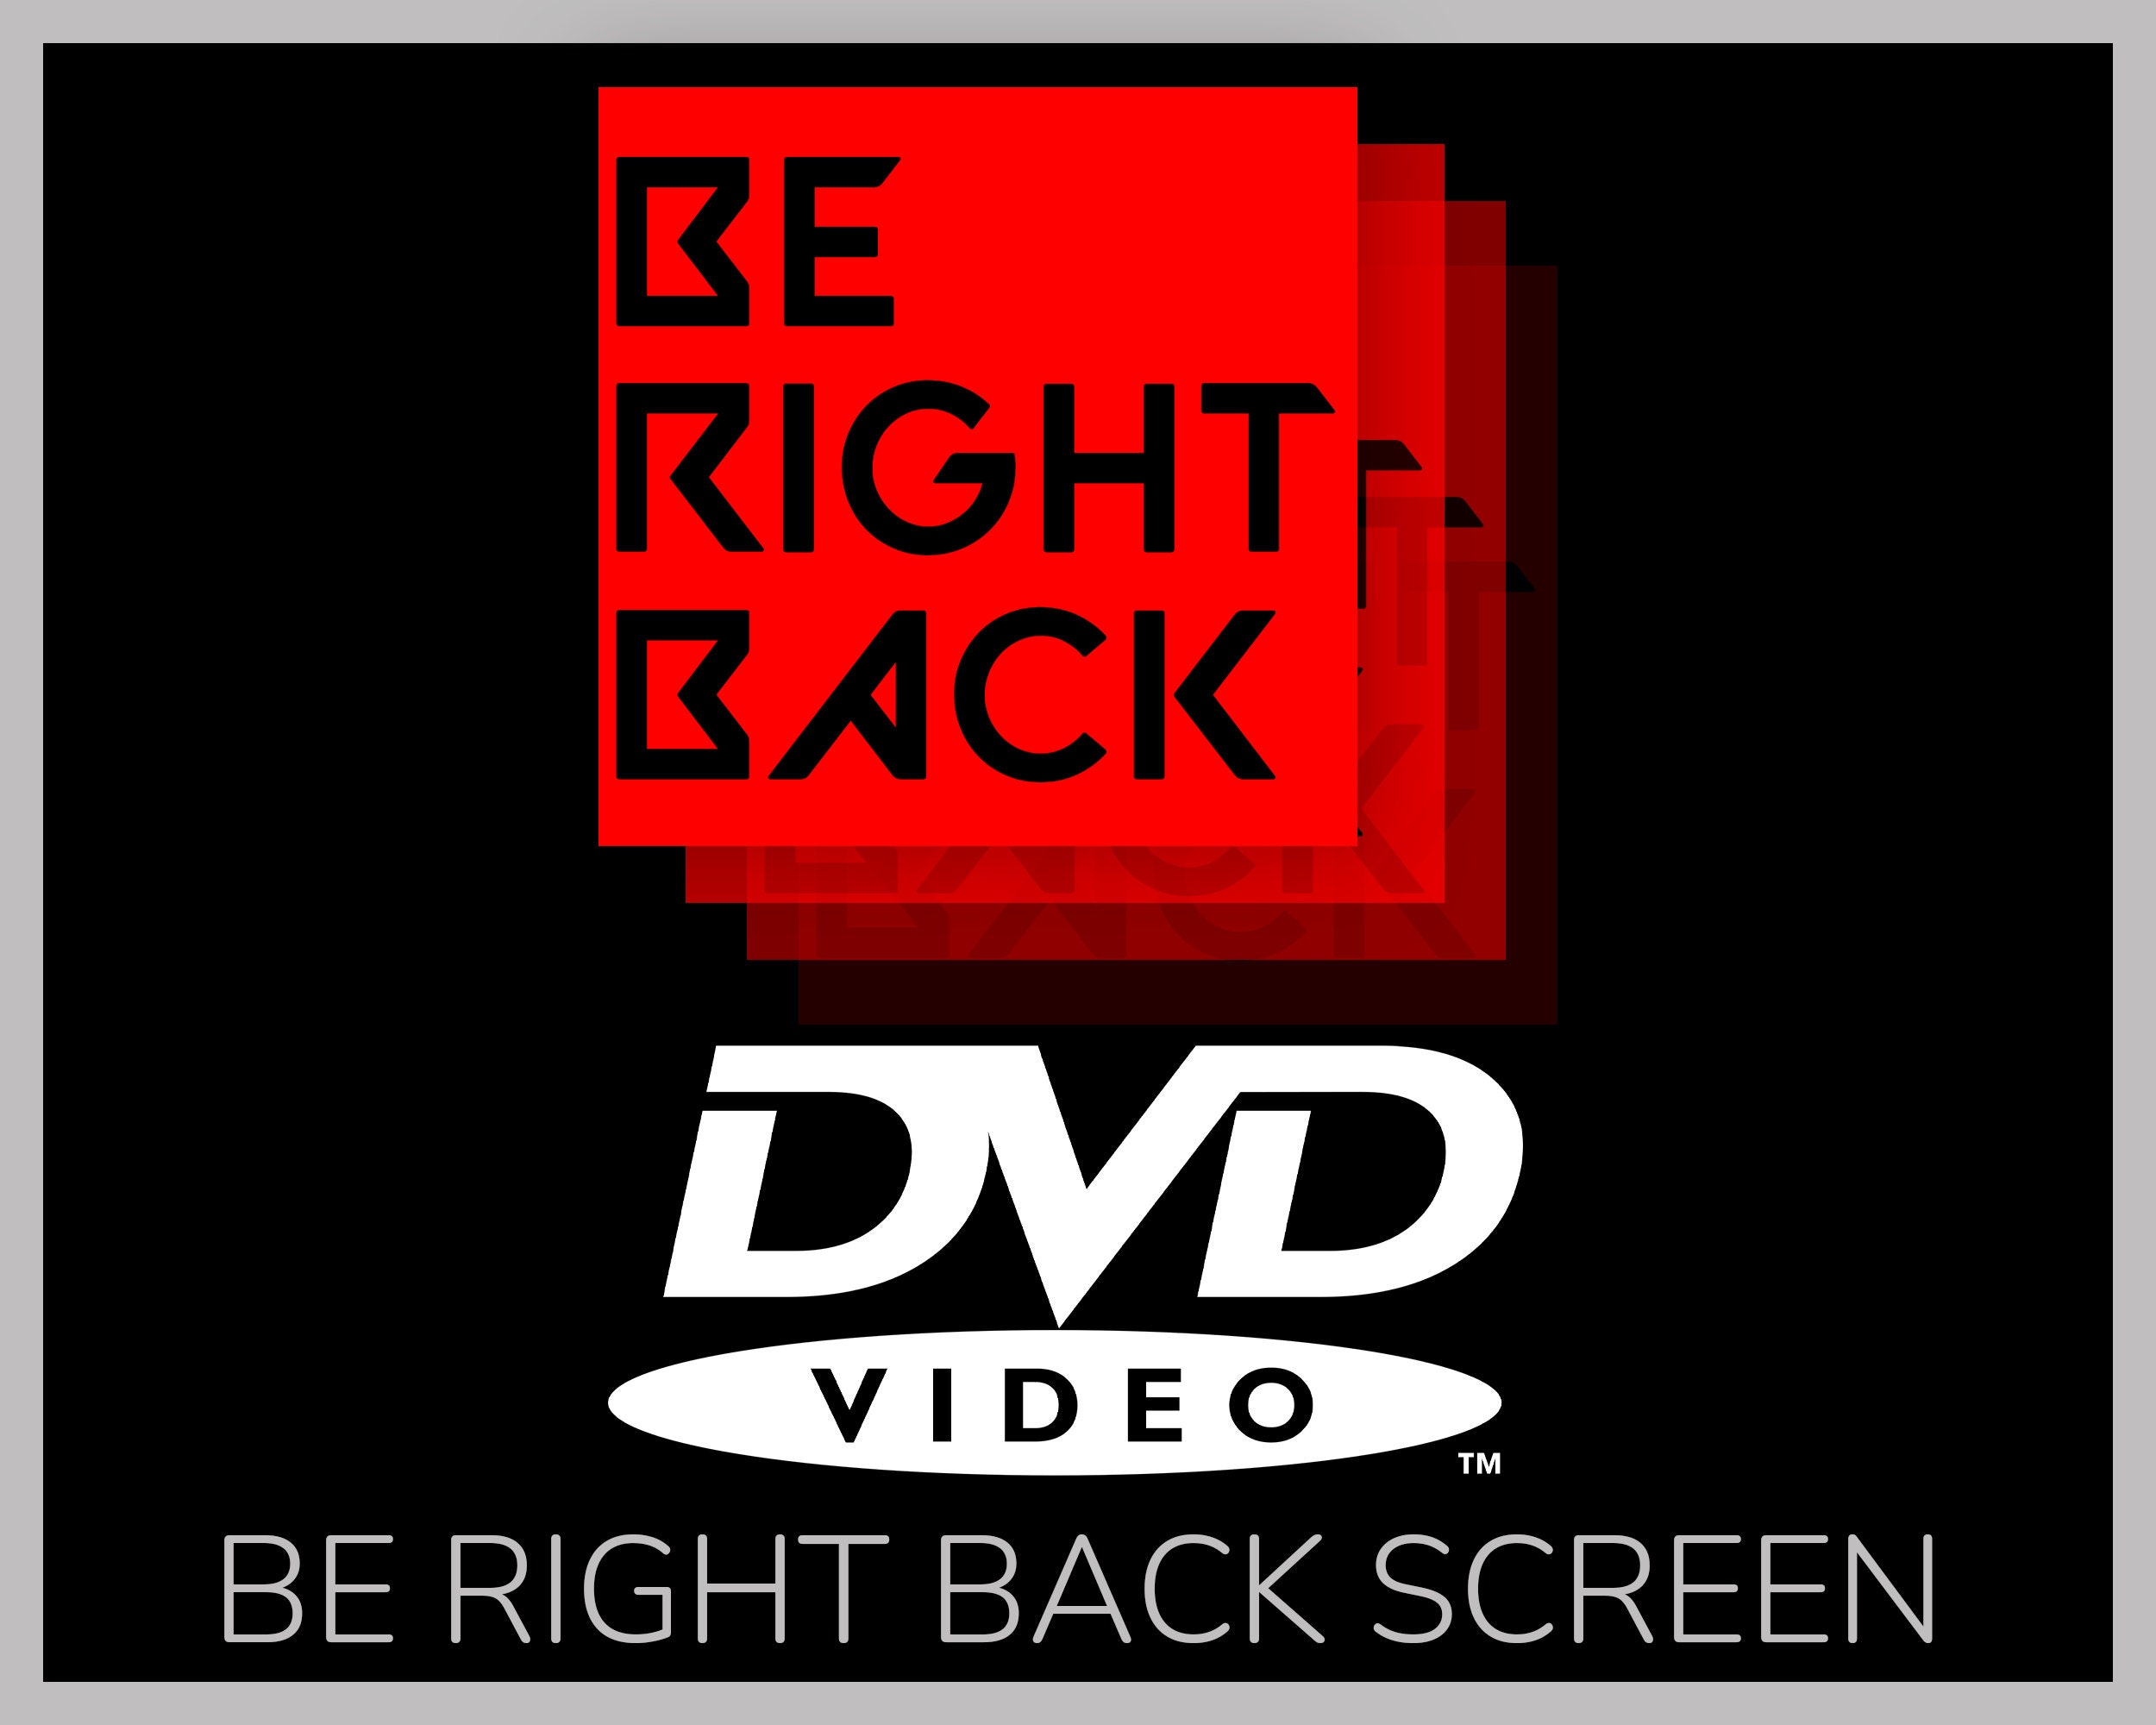 dvd screensaver goes in the corner｜TikTok Search